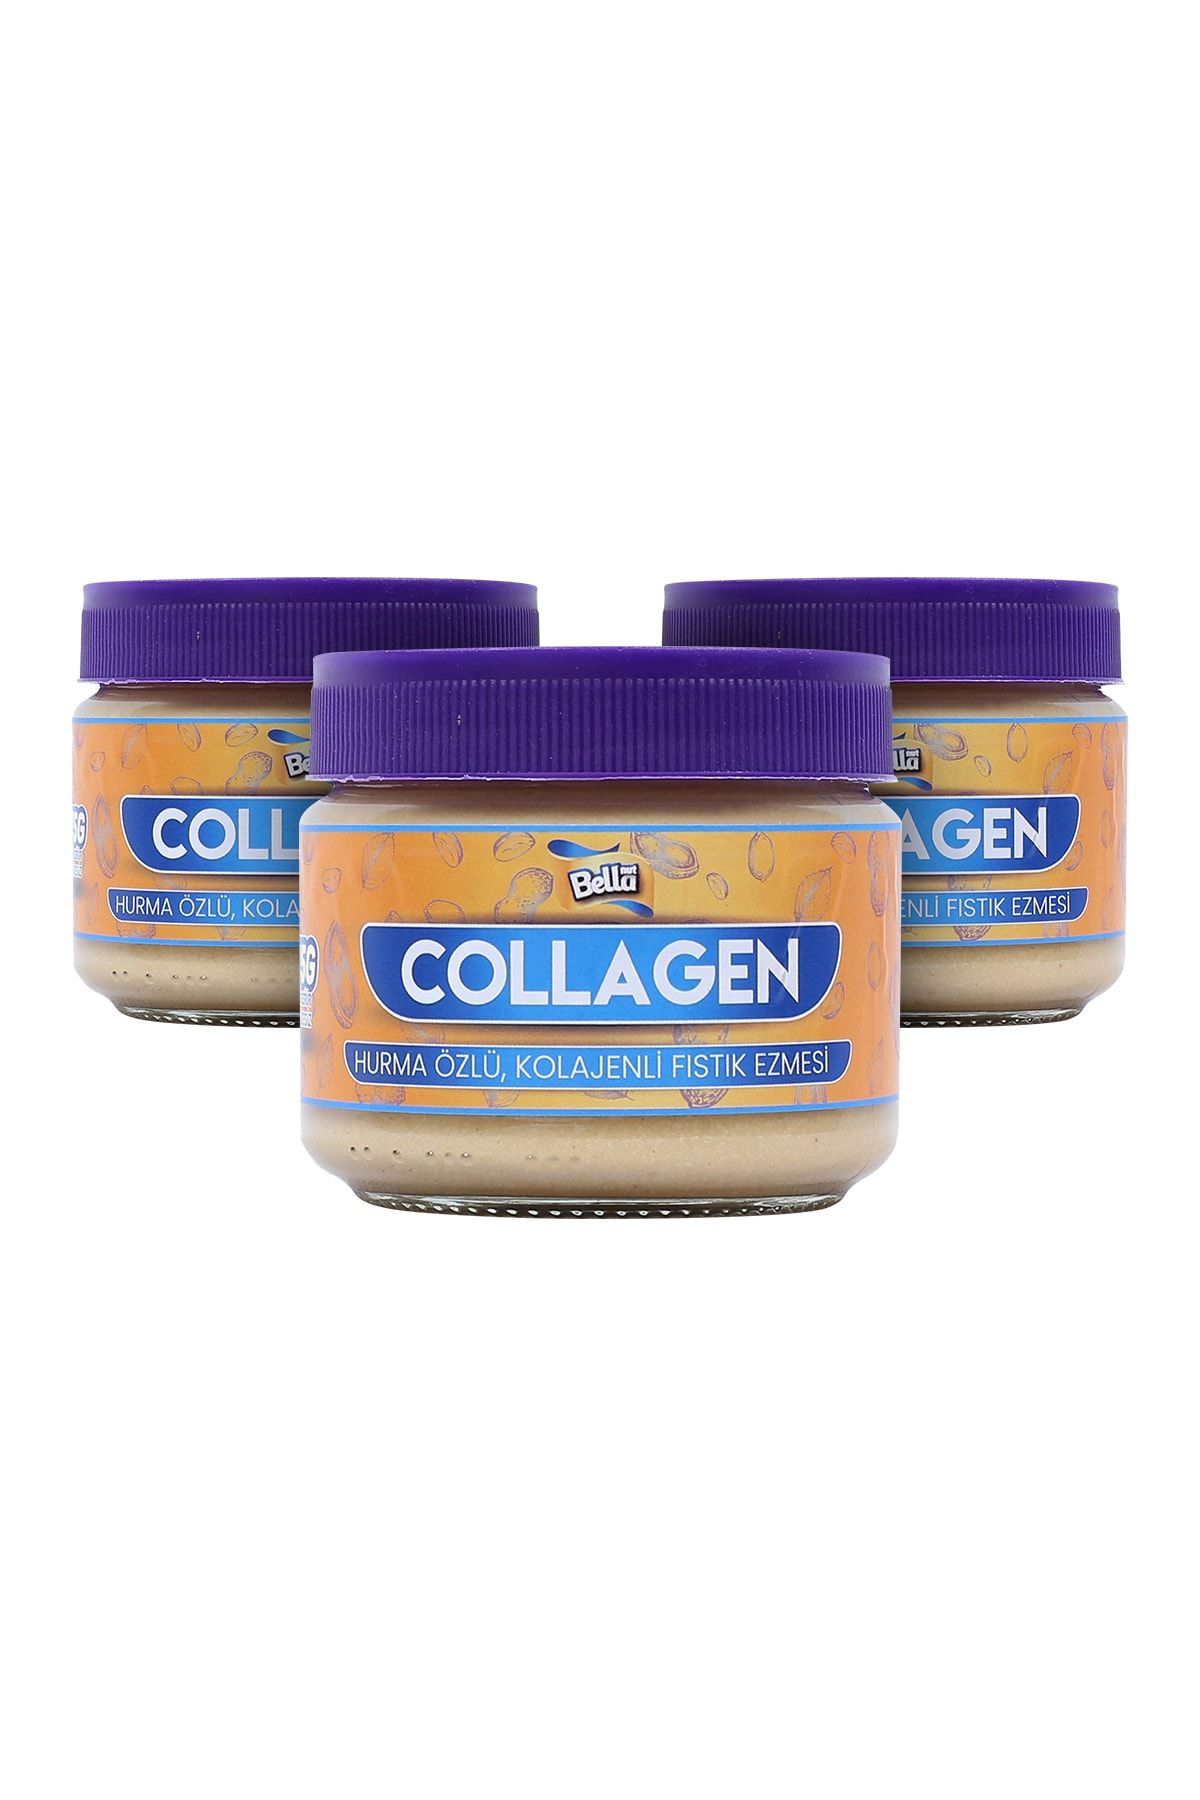 Bellanut Collagen (KOLAJENLİ) Fıstık Ezmesi *3